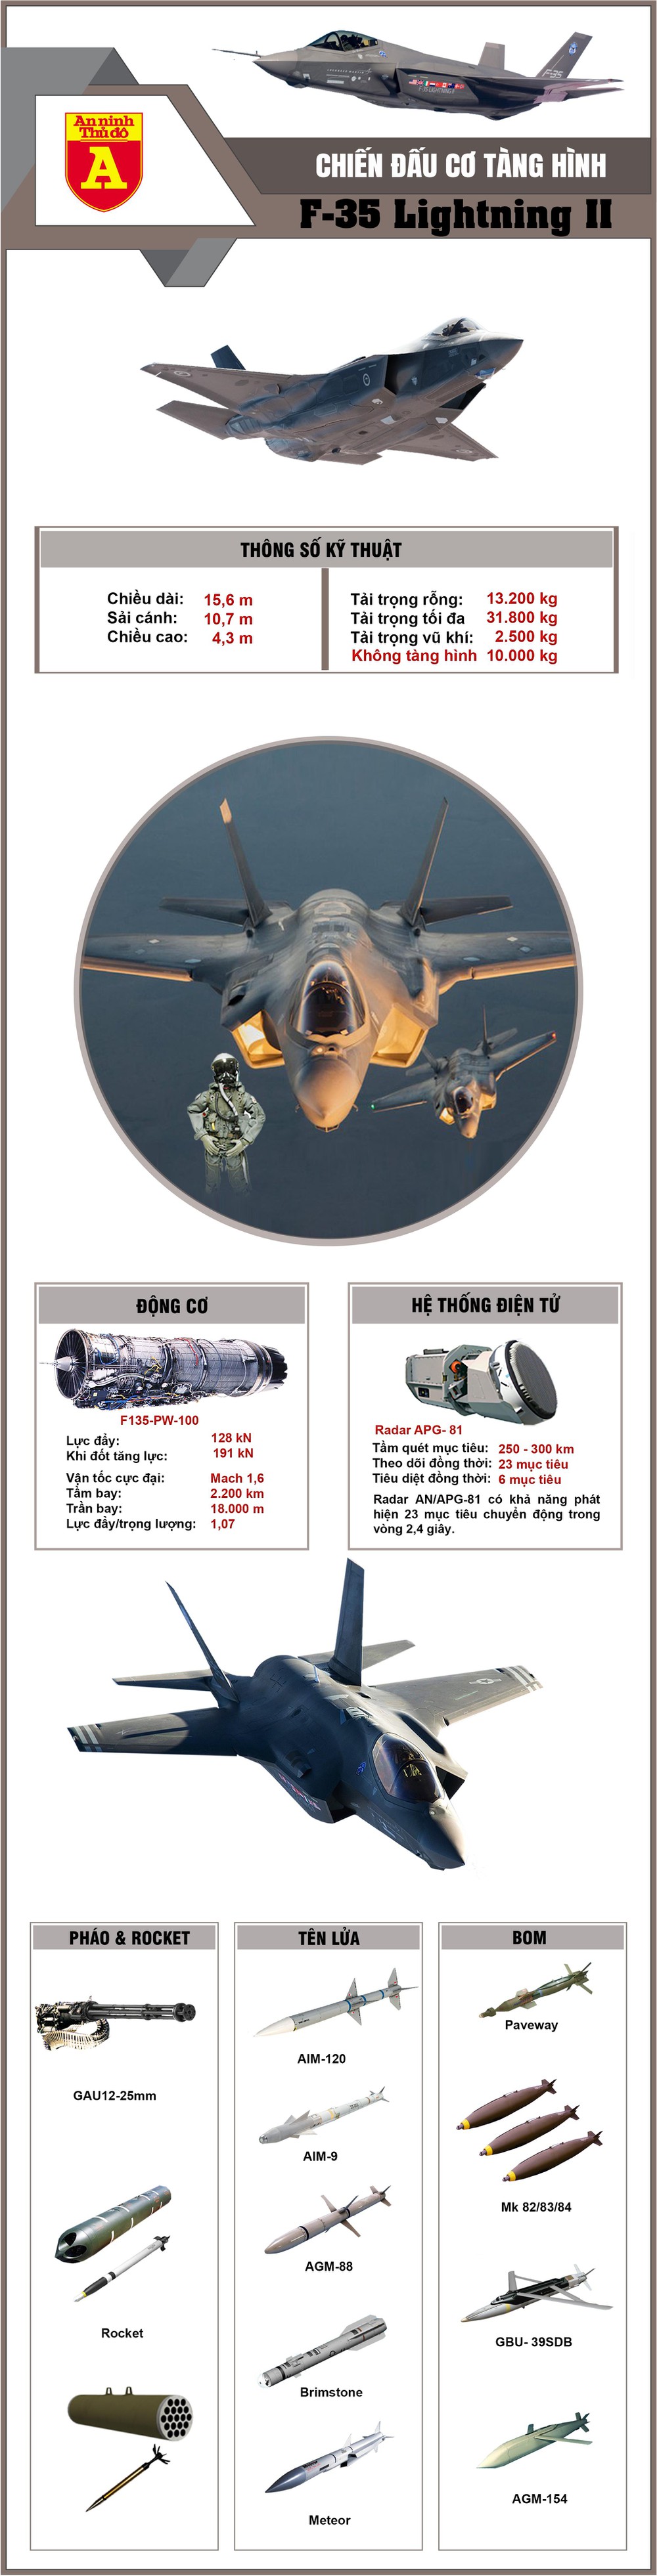 Chiến đấu cơ tàng hình F-35 Lightning II - Dòng máy bay chiến đấu tương lai của Mỹ  - Ảnh 1